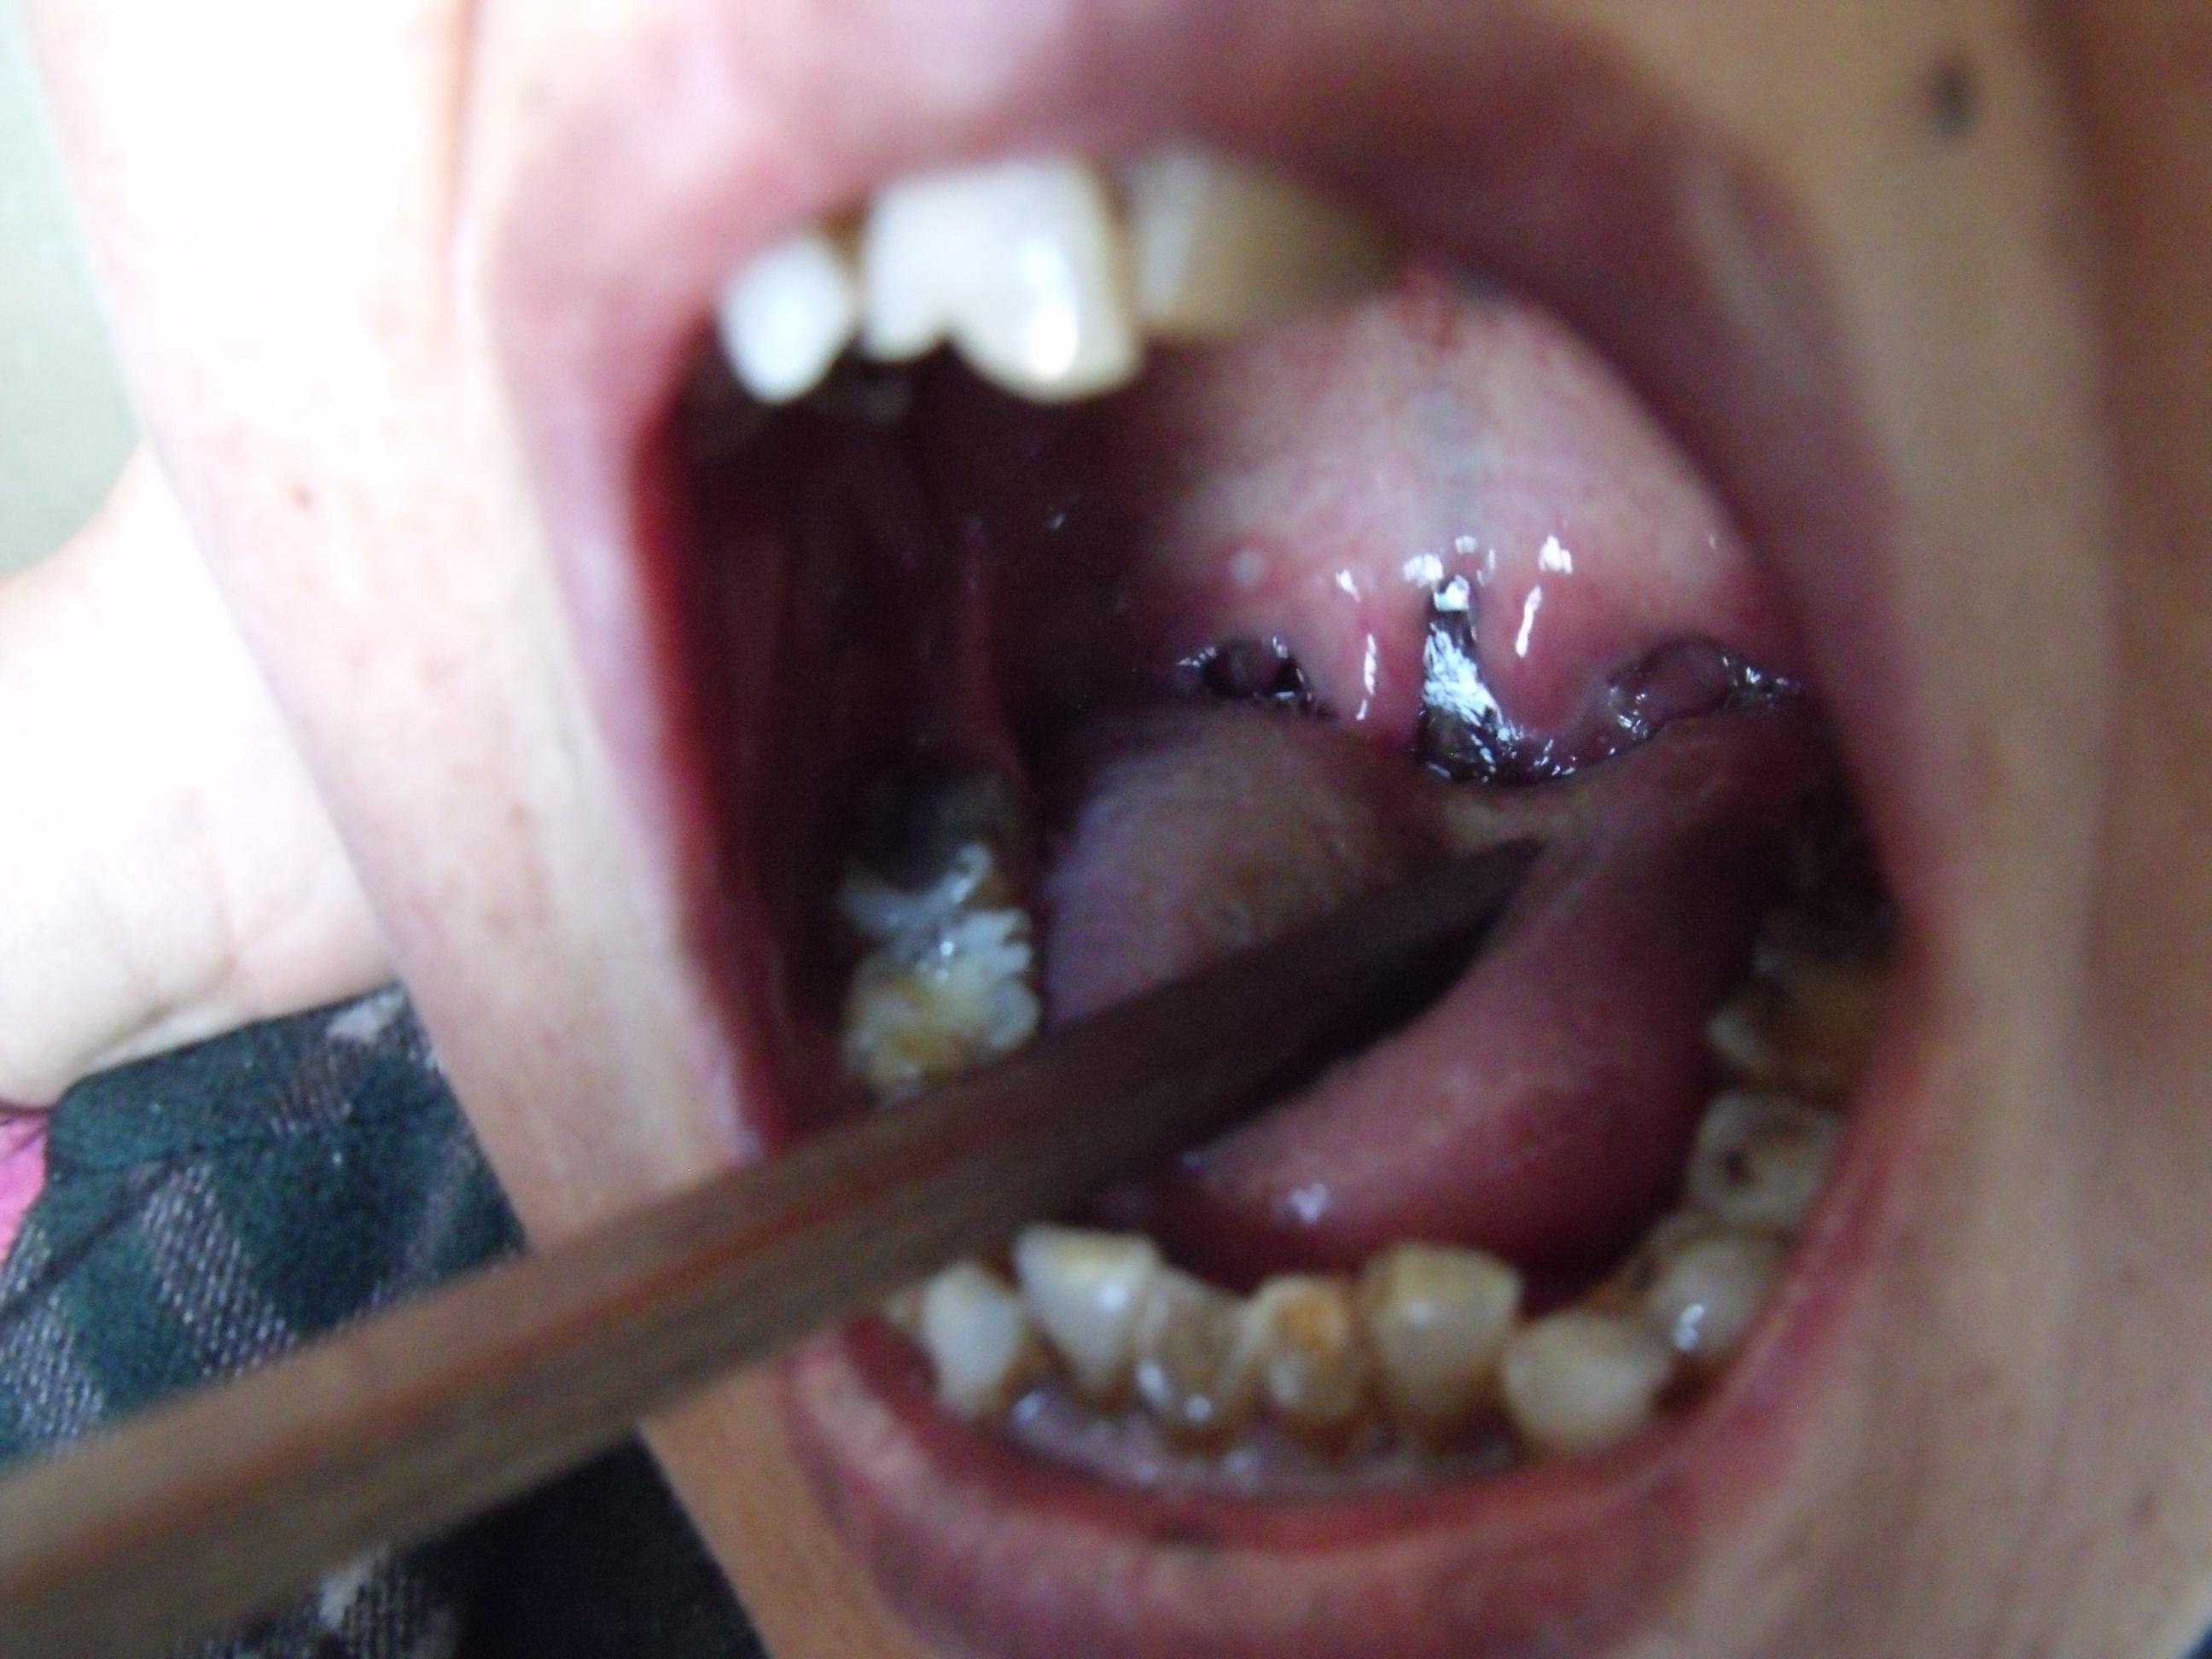 咽喉小舌头肿大图片图片